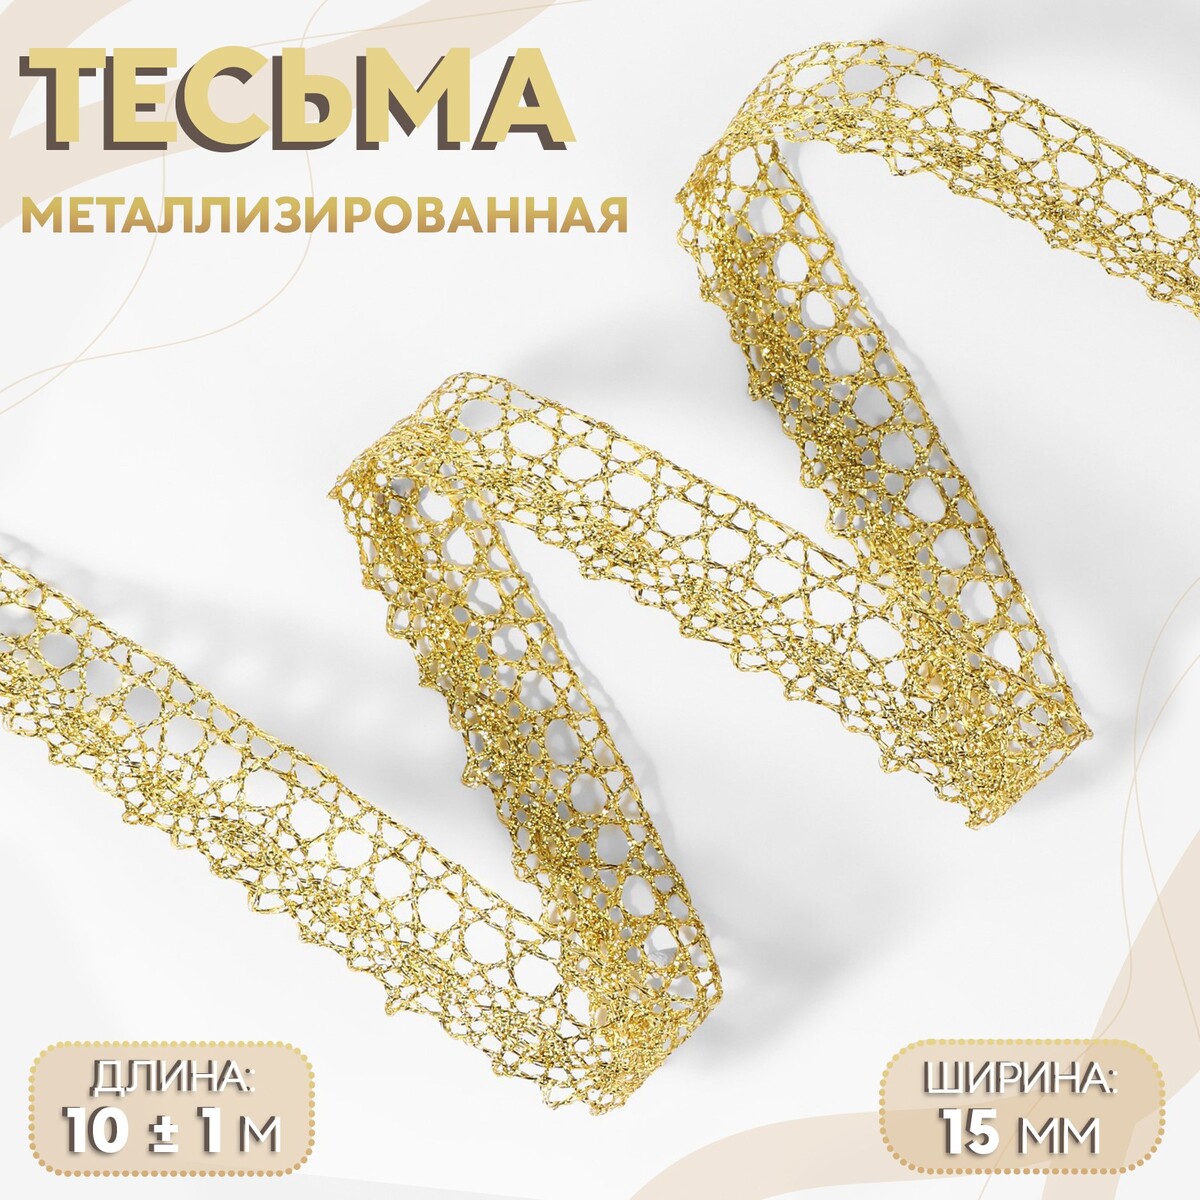 Тесьма декоративная, металлизированная, 10 ± 1 м, 15 мм, цвет золотой тесьма декоративная металлизированная 10 ± 1 м 8 мм золотой